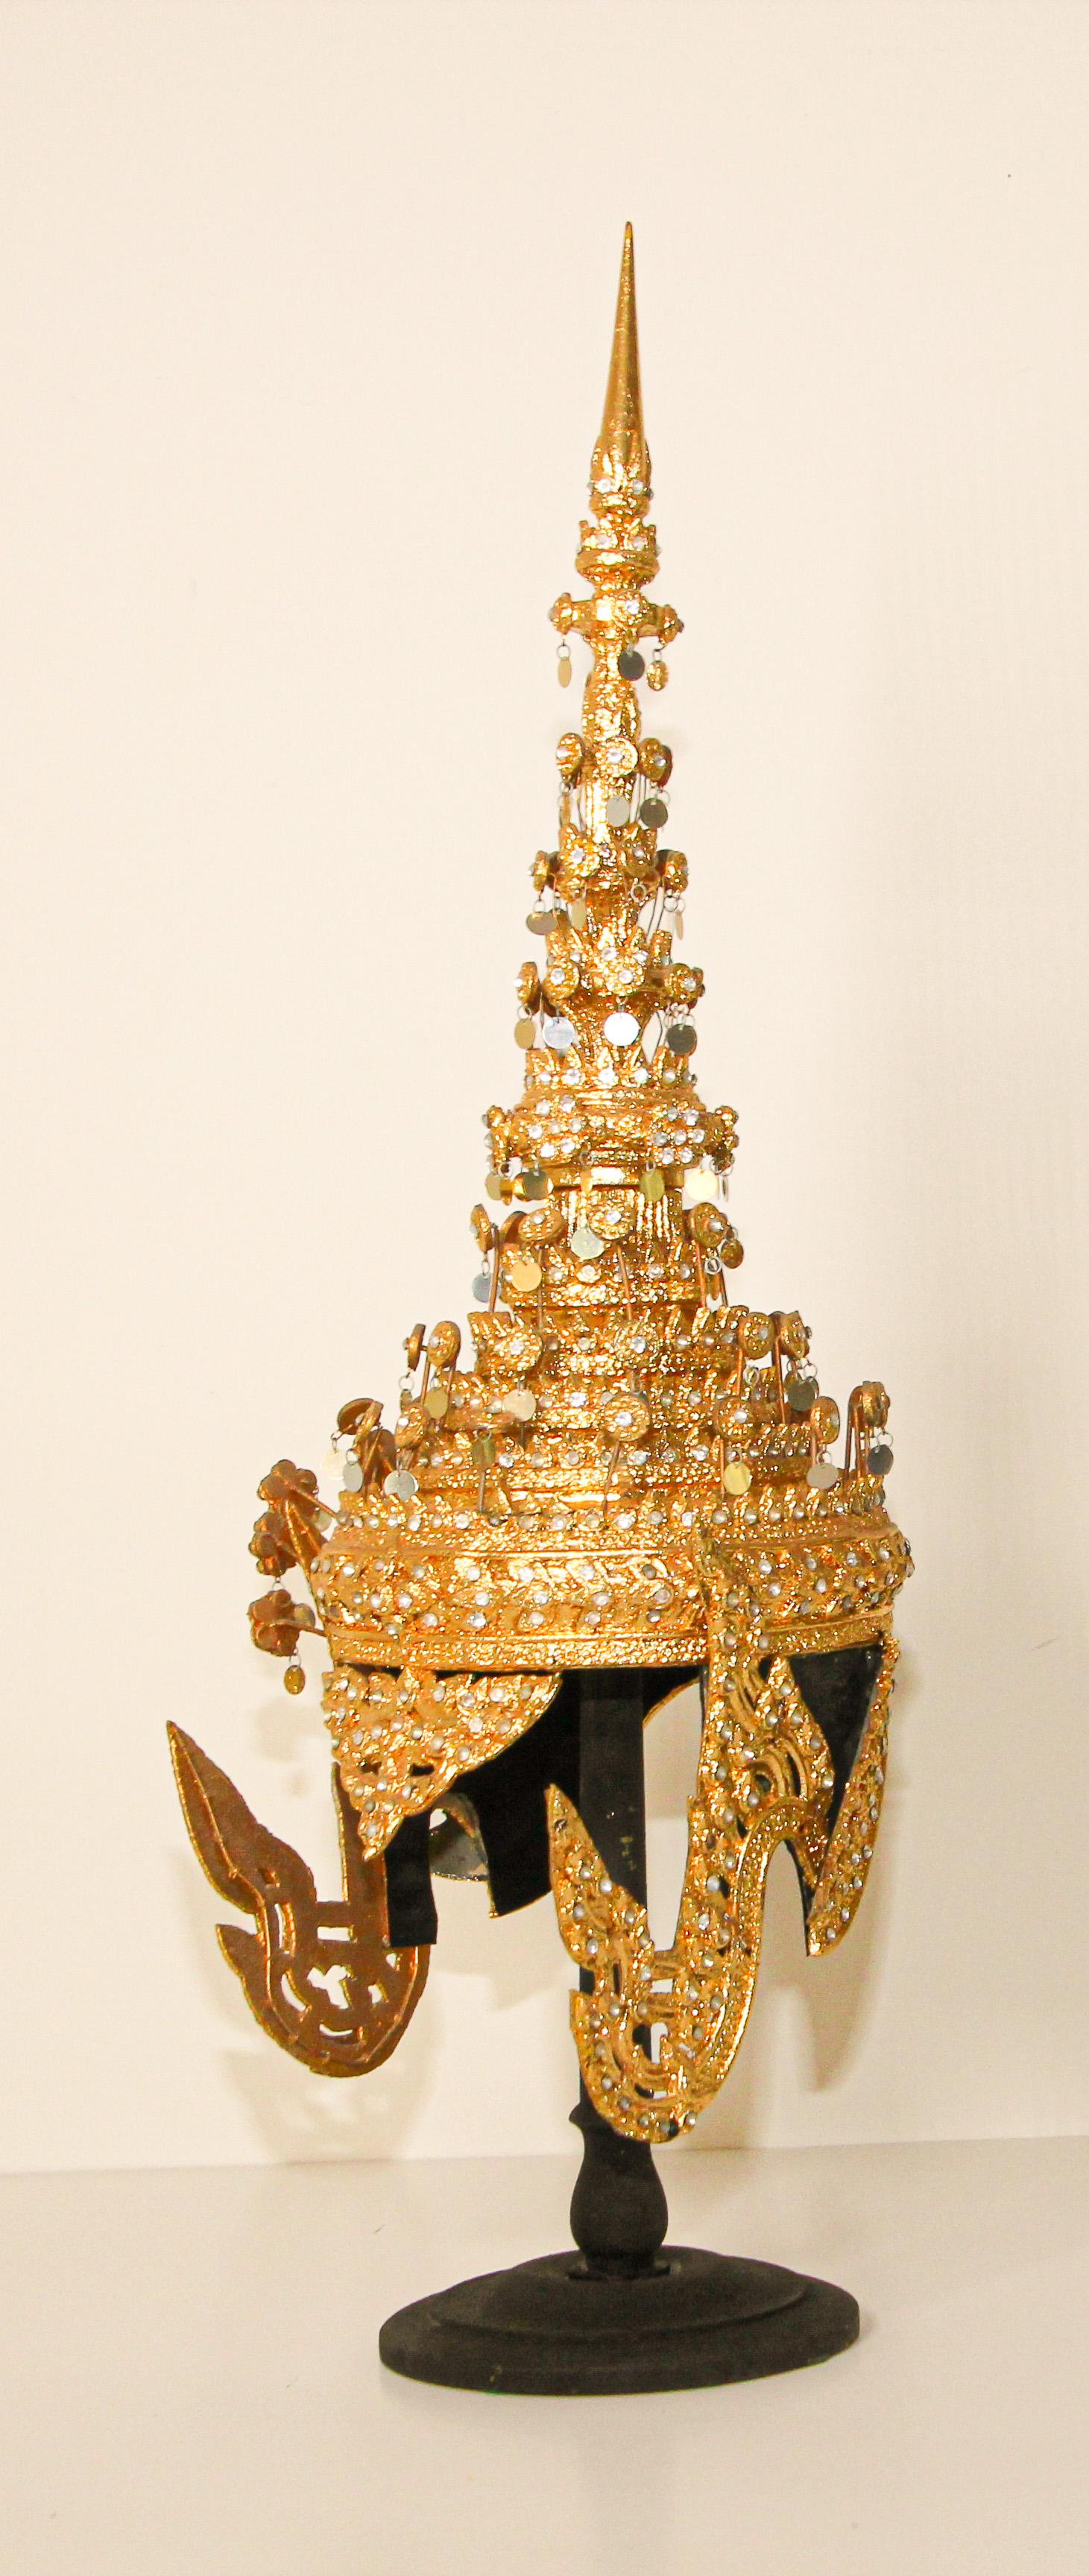 Zeremonieller thailändischer Kopfschmuck, der gewöhnlich bei Hochzeiten oder religiösen Zeremonien getragen wird.
Handgefertigt in Thailand.
Vergoldeter thailändischer Zeremonienkopfschmuck um das 20.
Ein traditionelles Modell mit einer